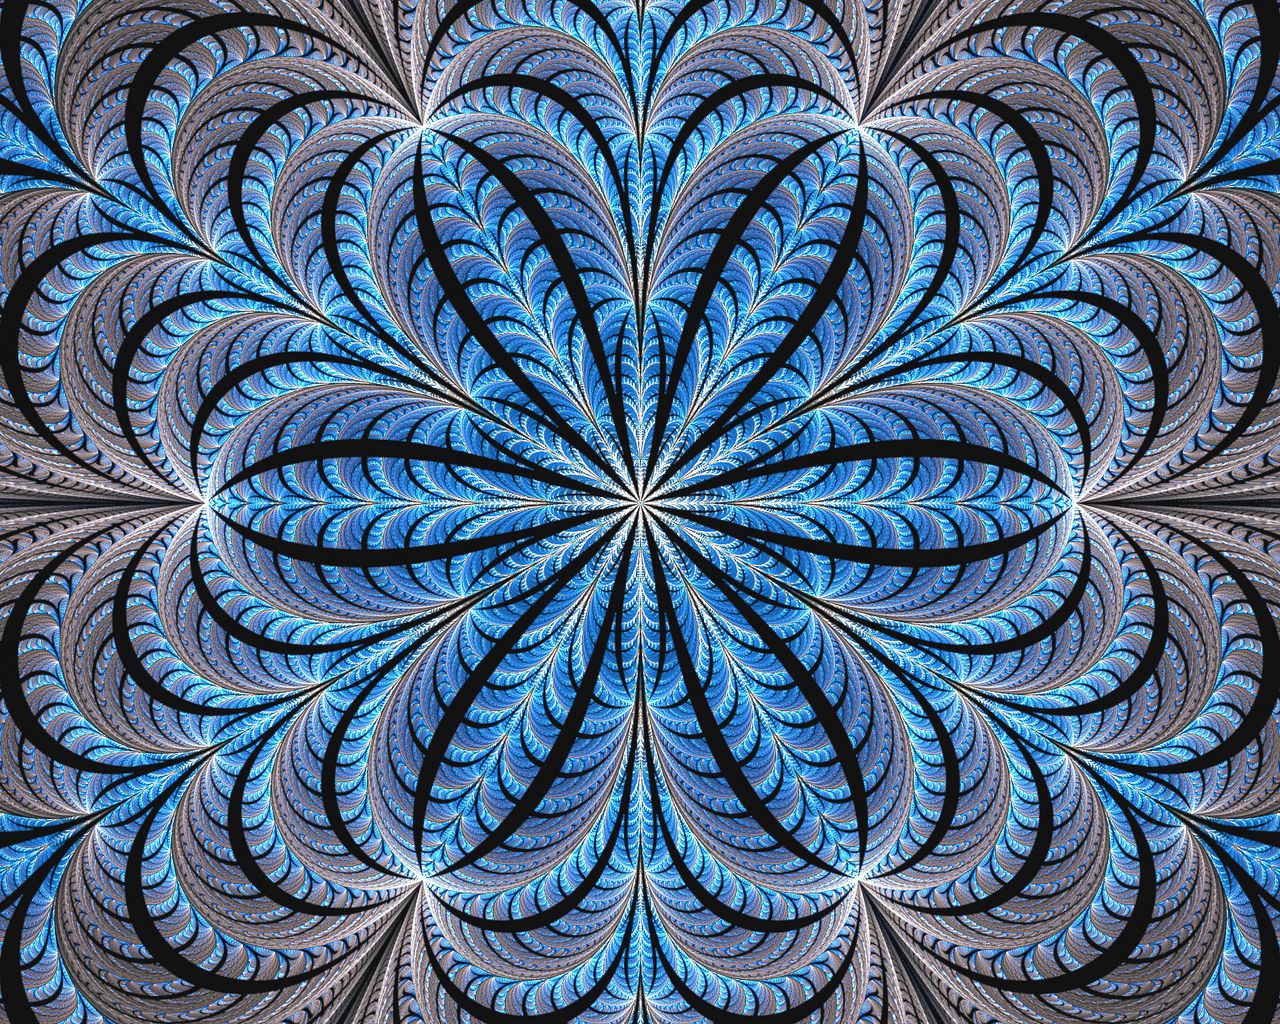 центральная симметрия в технике картинки